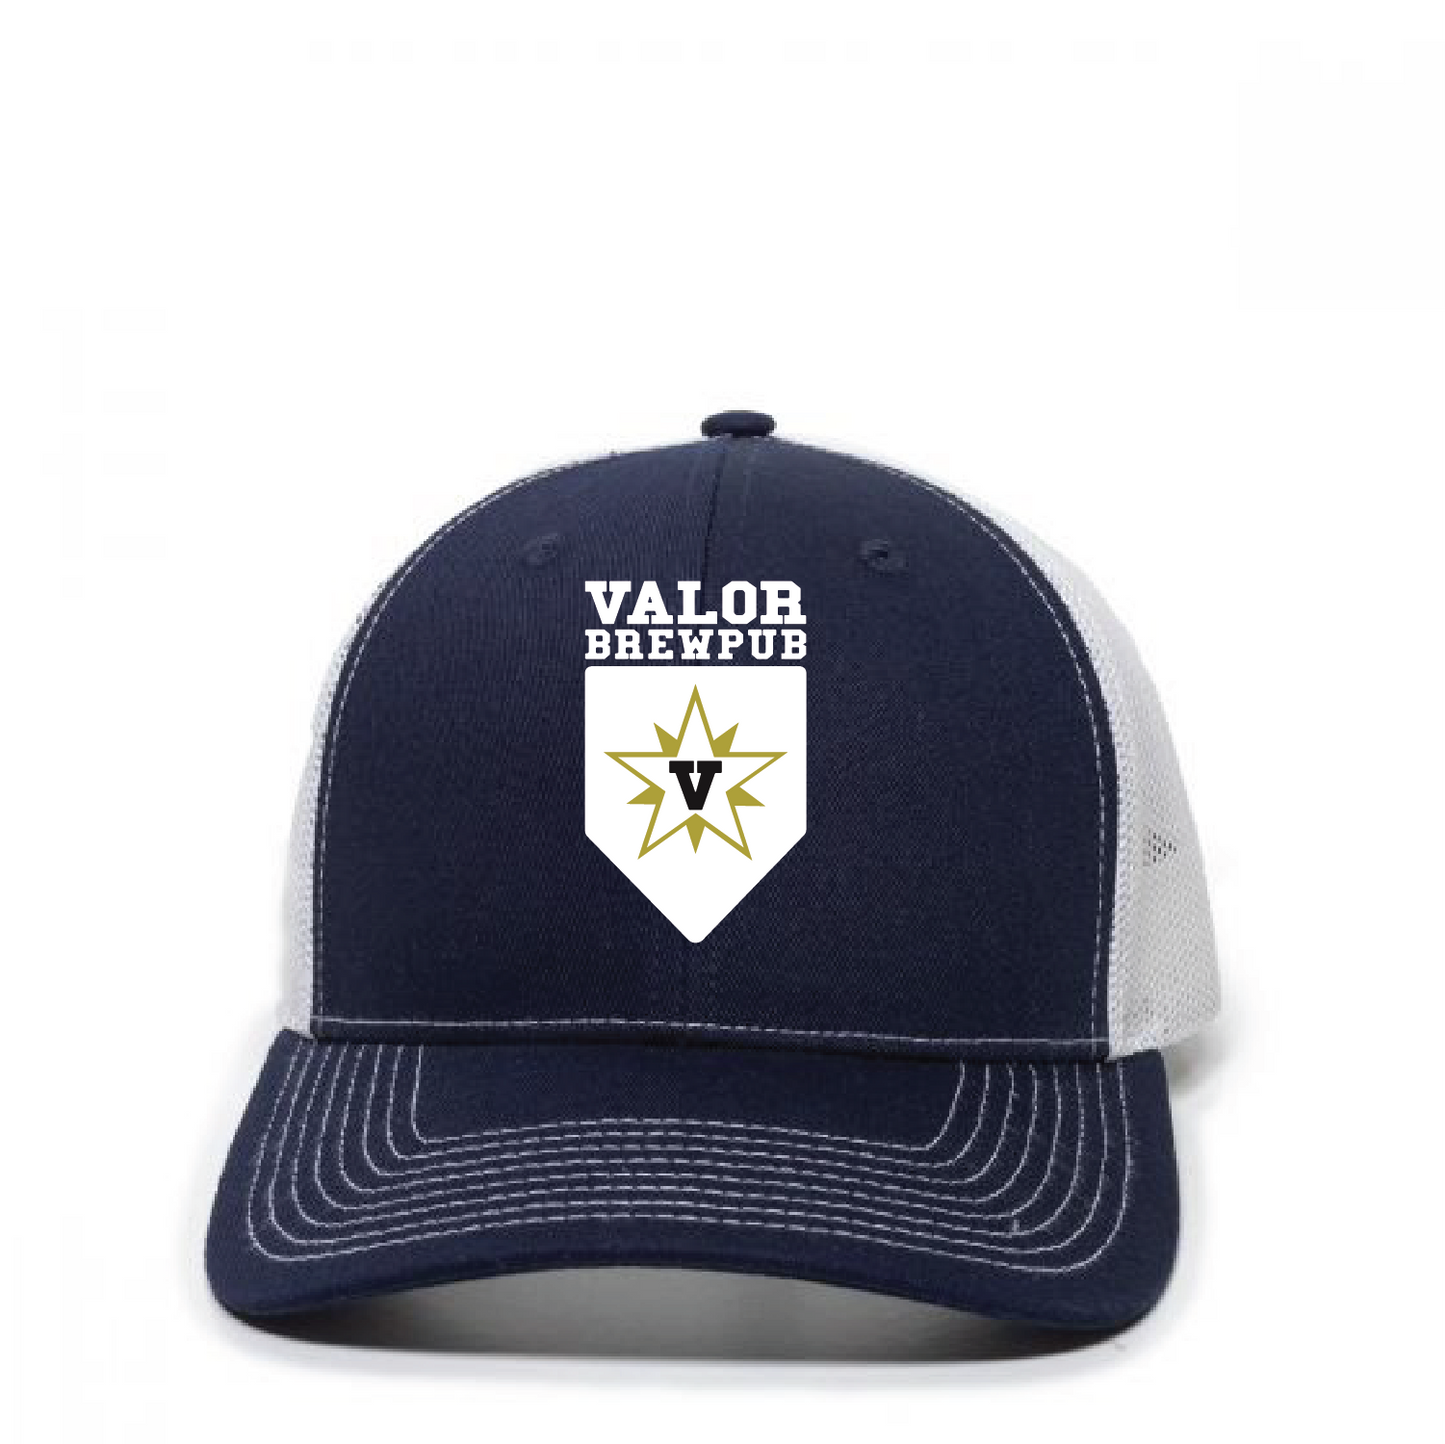 Valor BrewPub Premium Trucker Hat